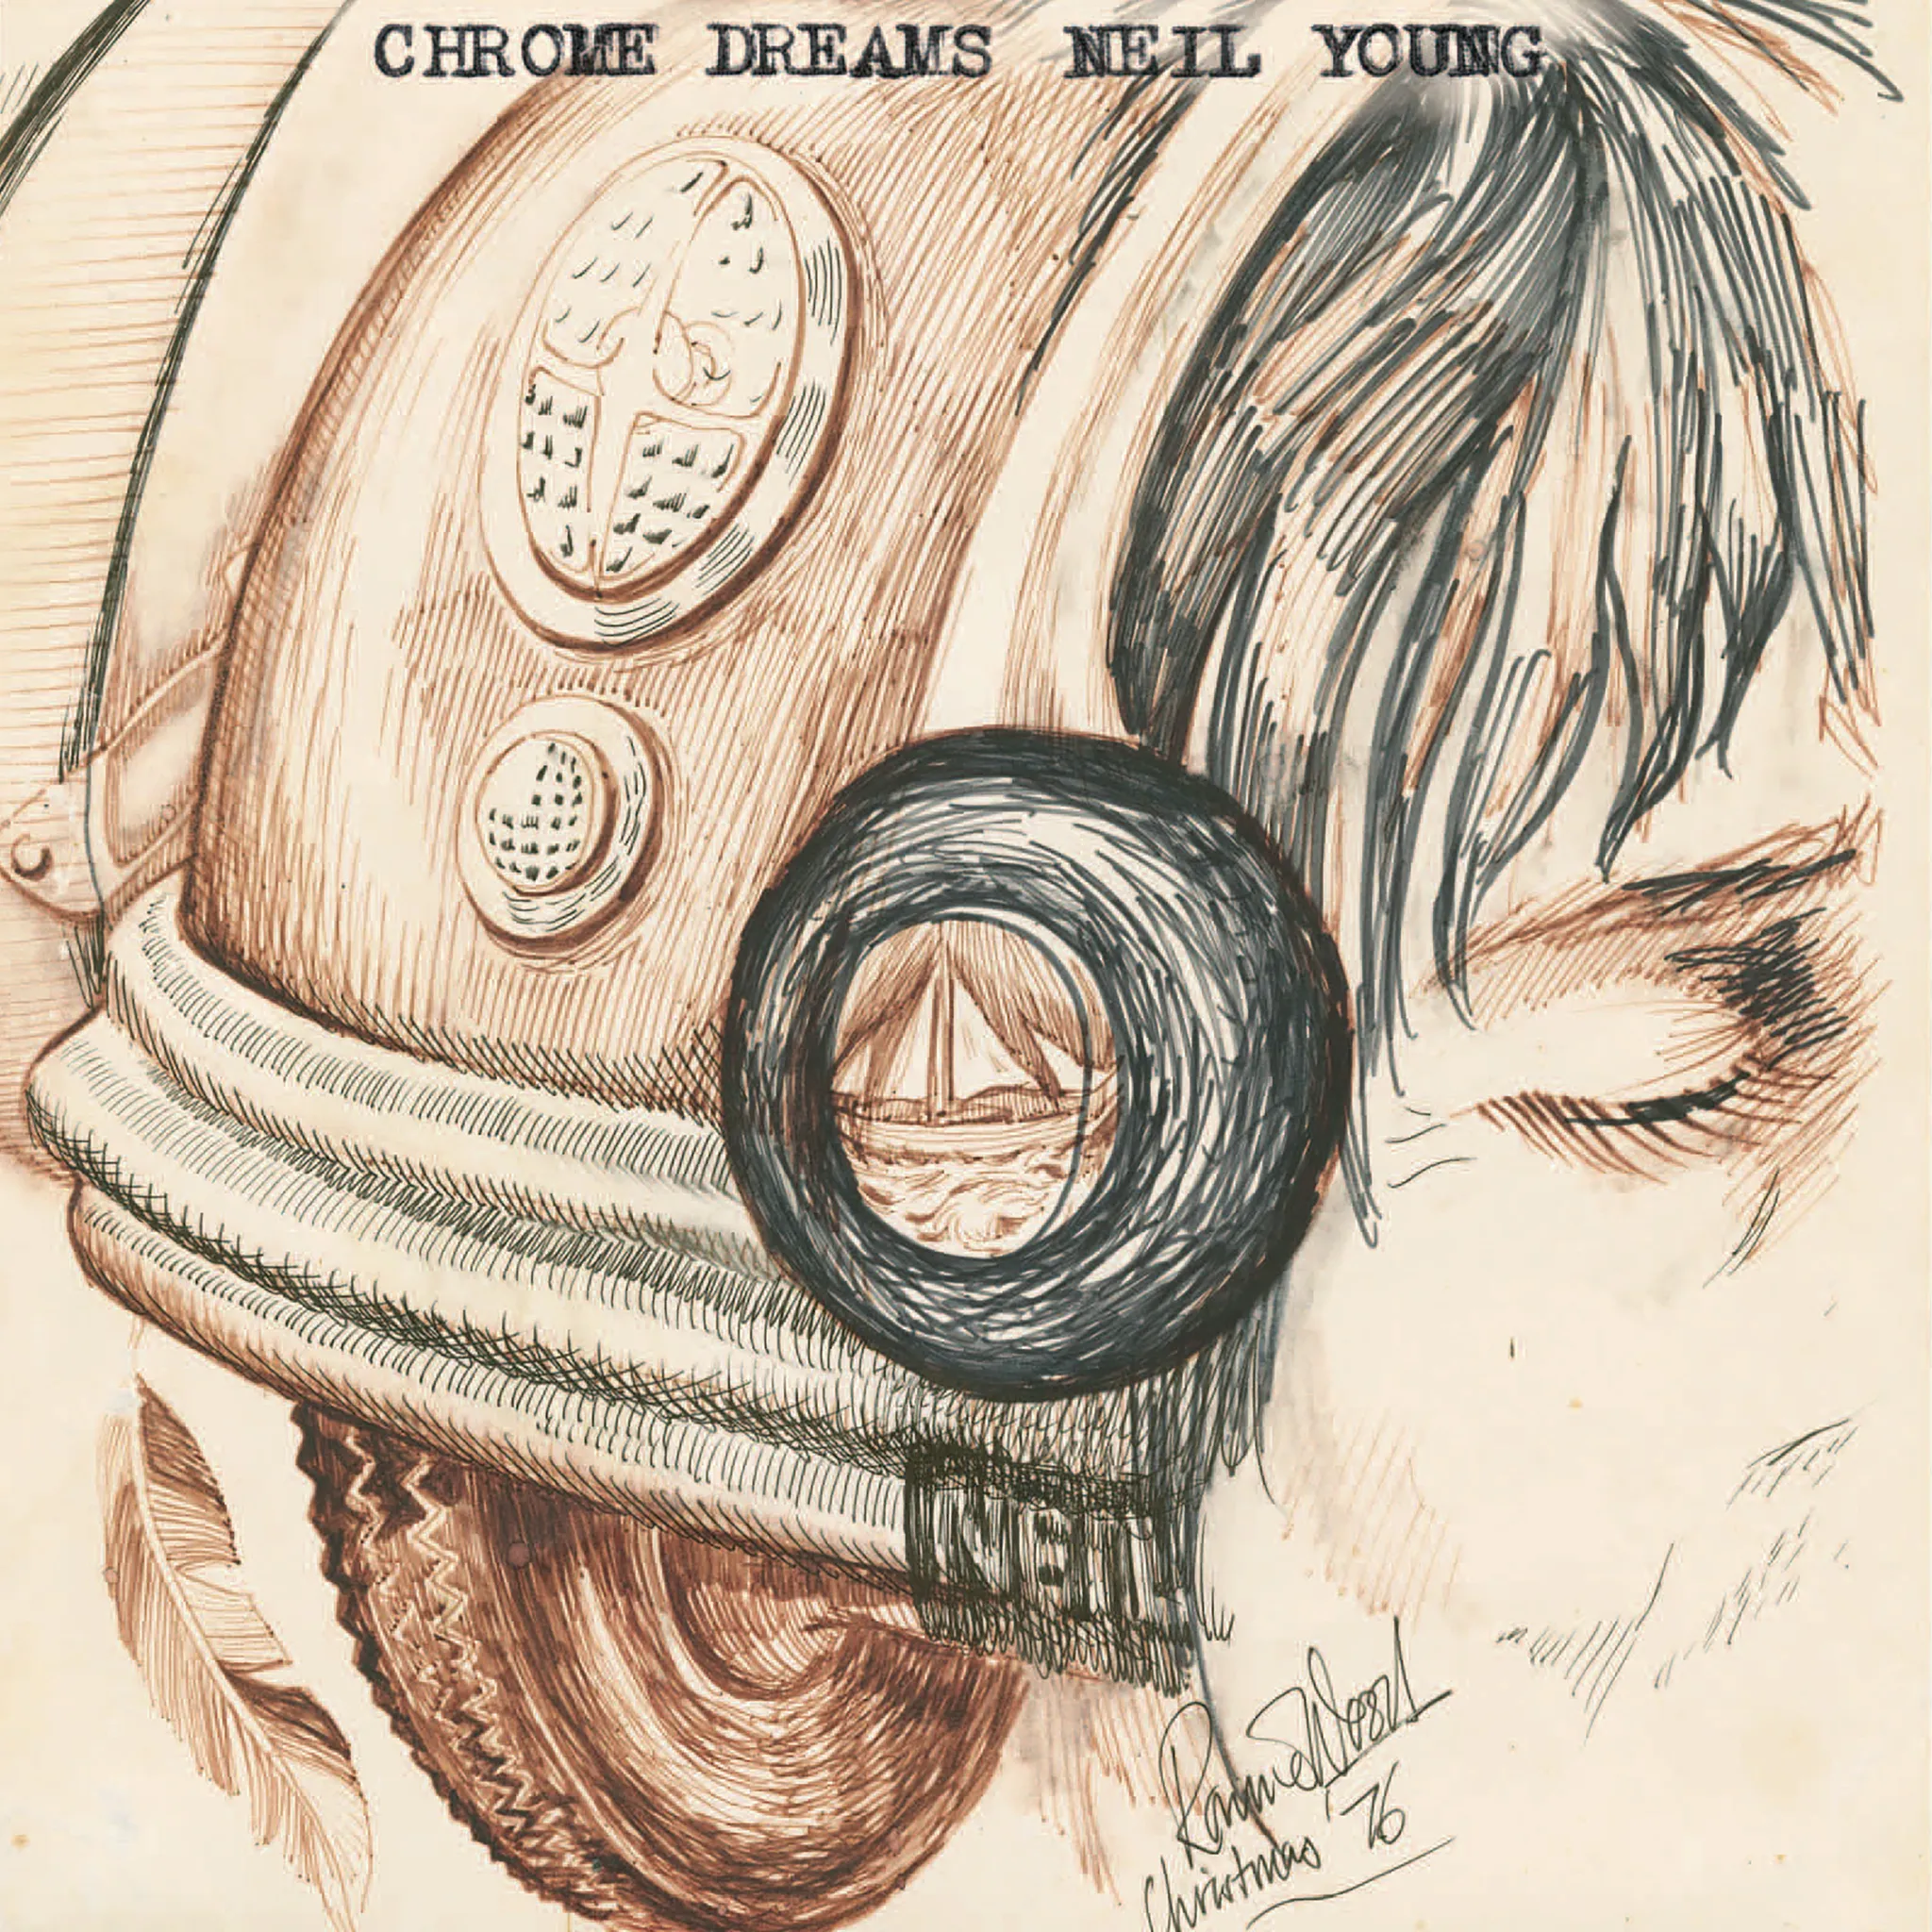 Neil Young - Chrome Dreams artwork